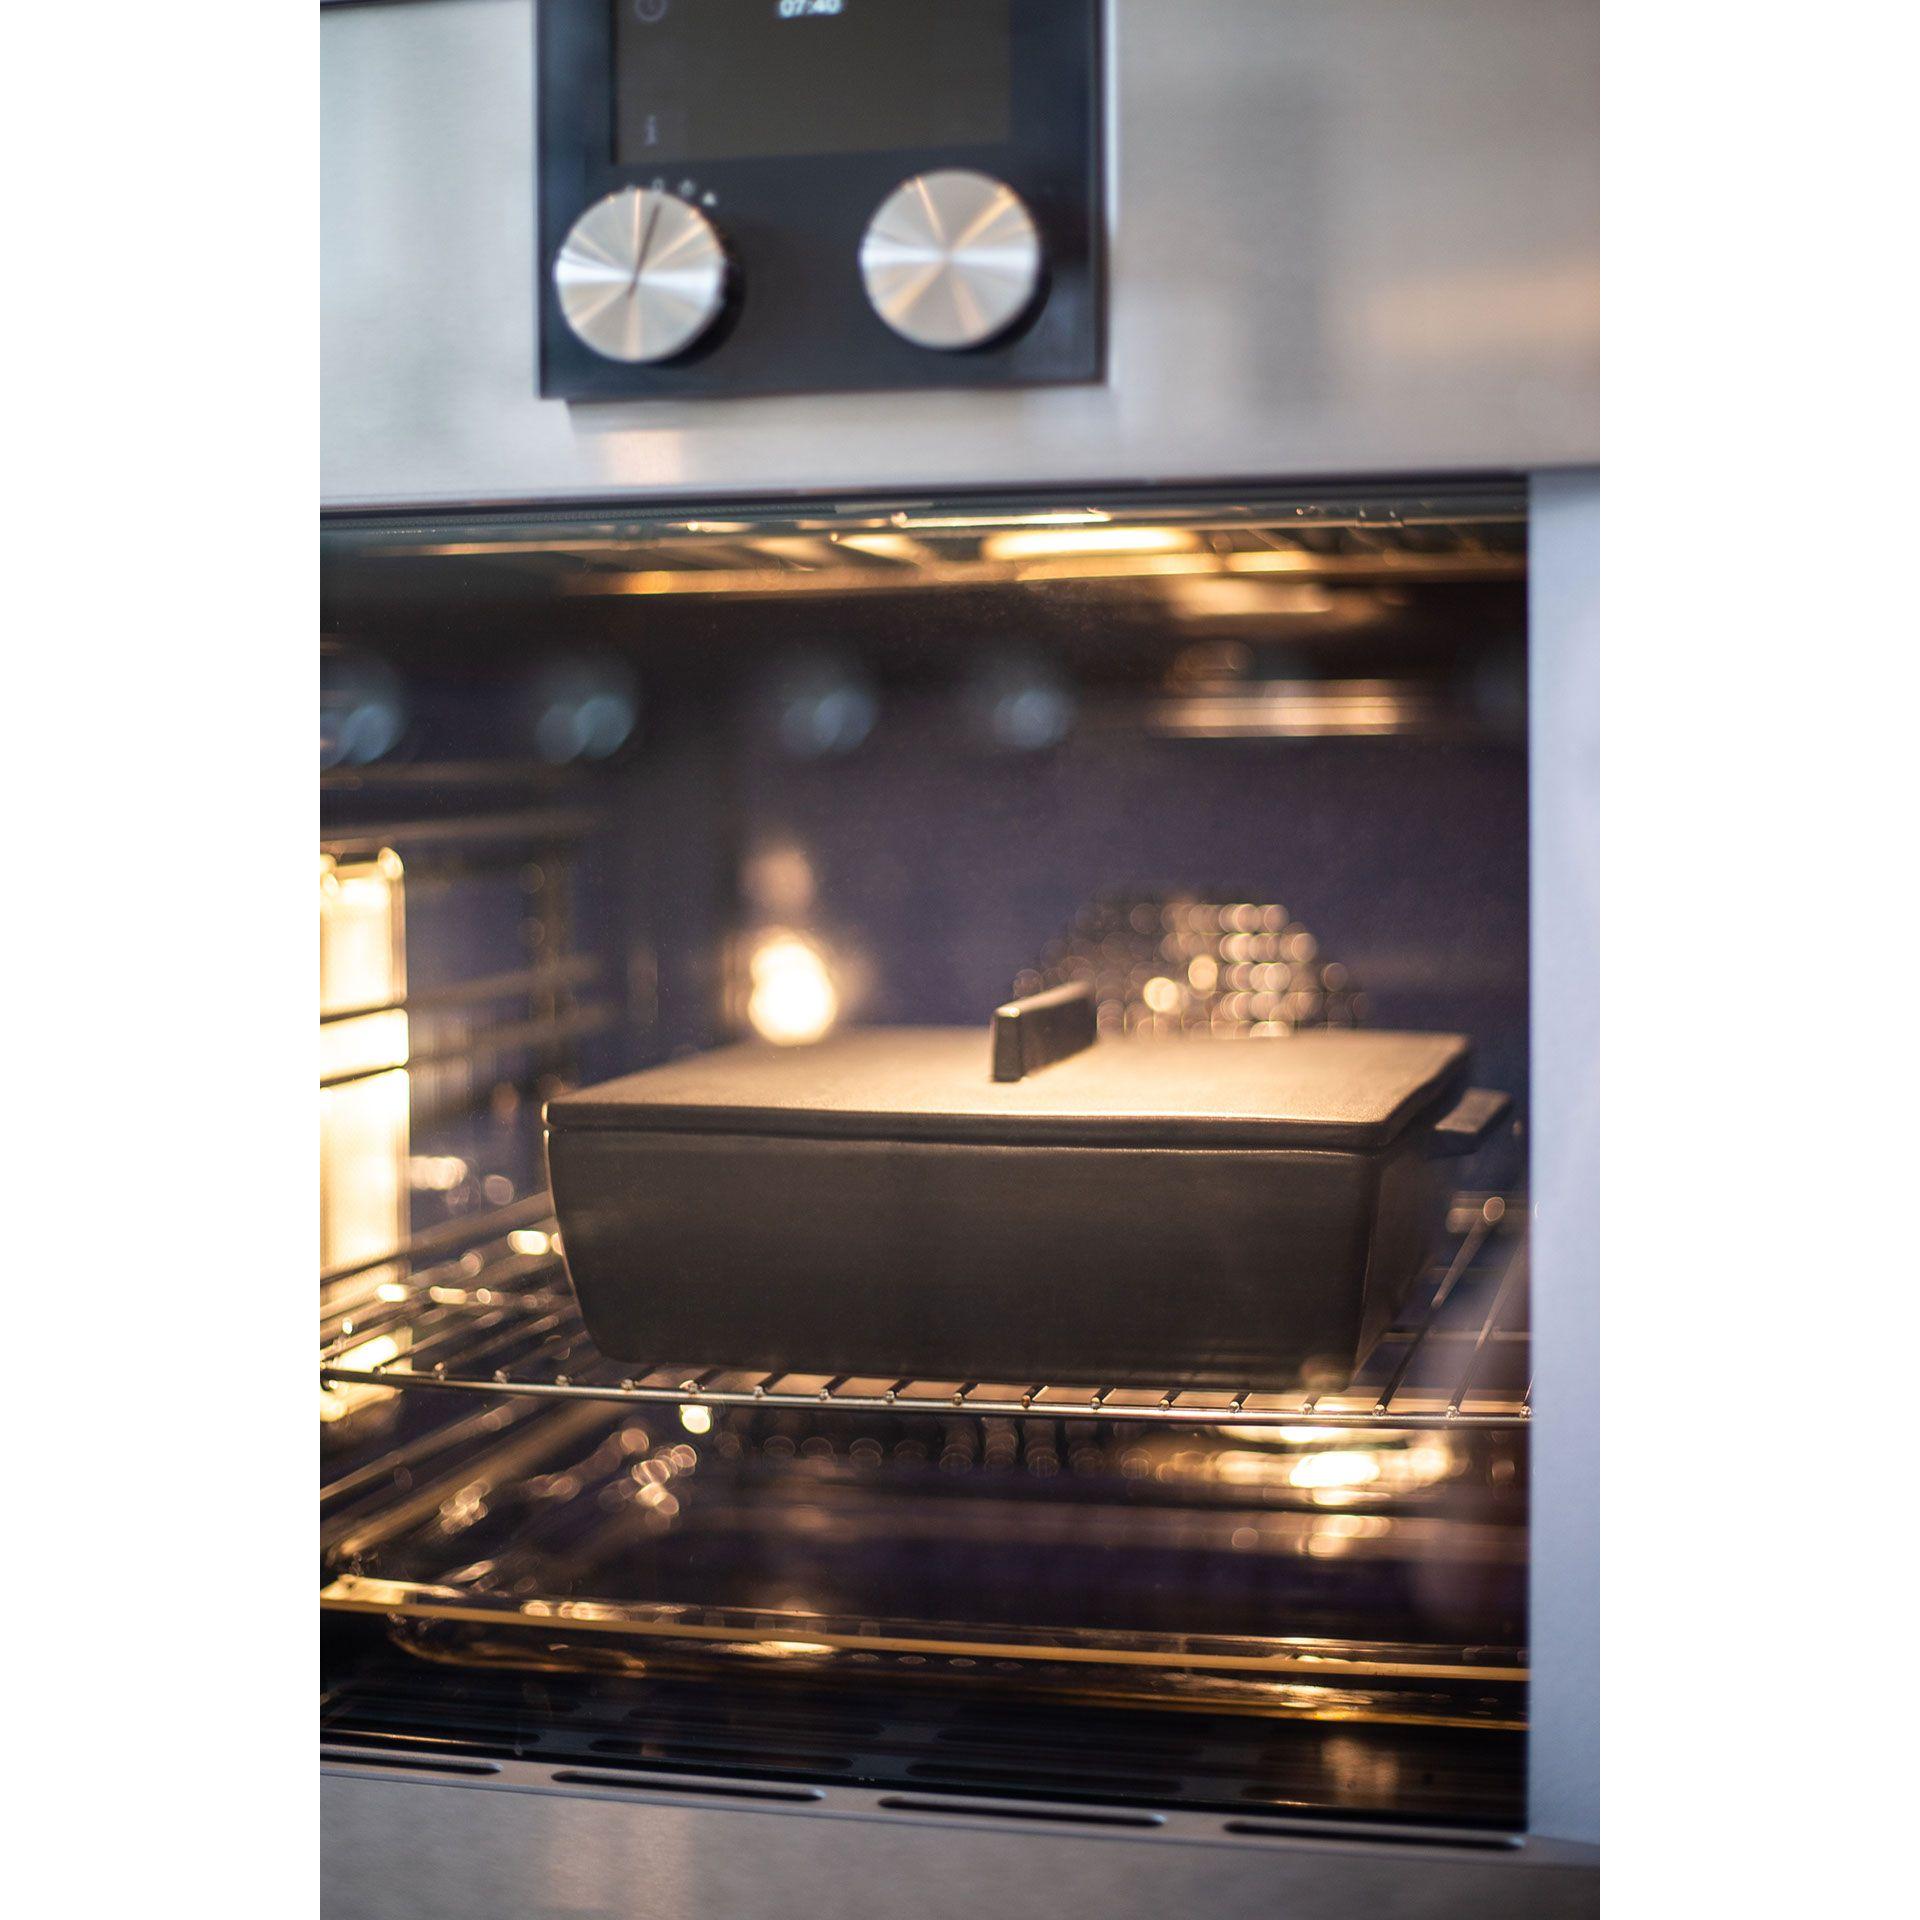 Dutchdeluxes Rechthoekige ovenschotel Keramisch medium, platina mat